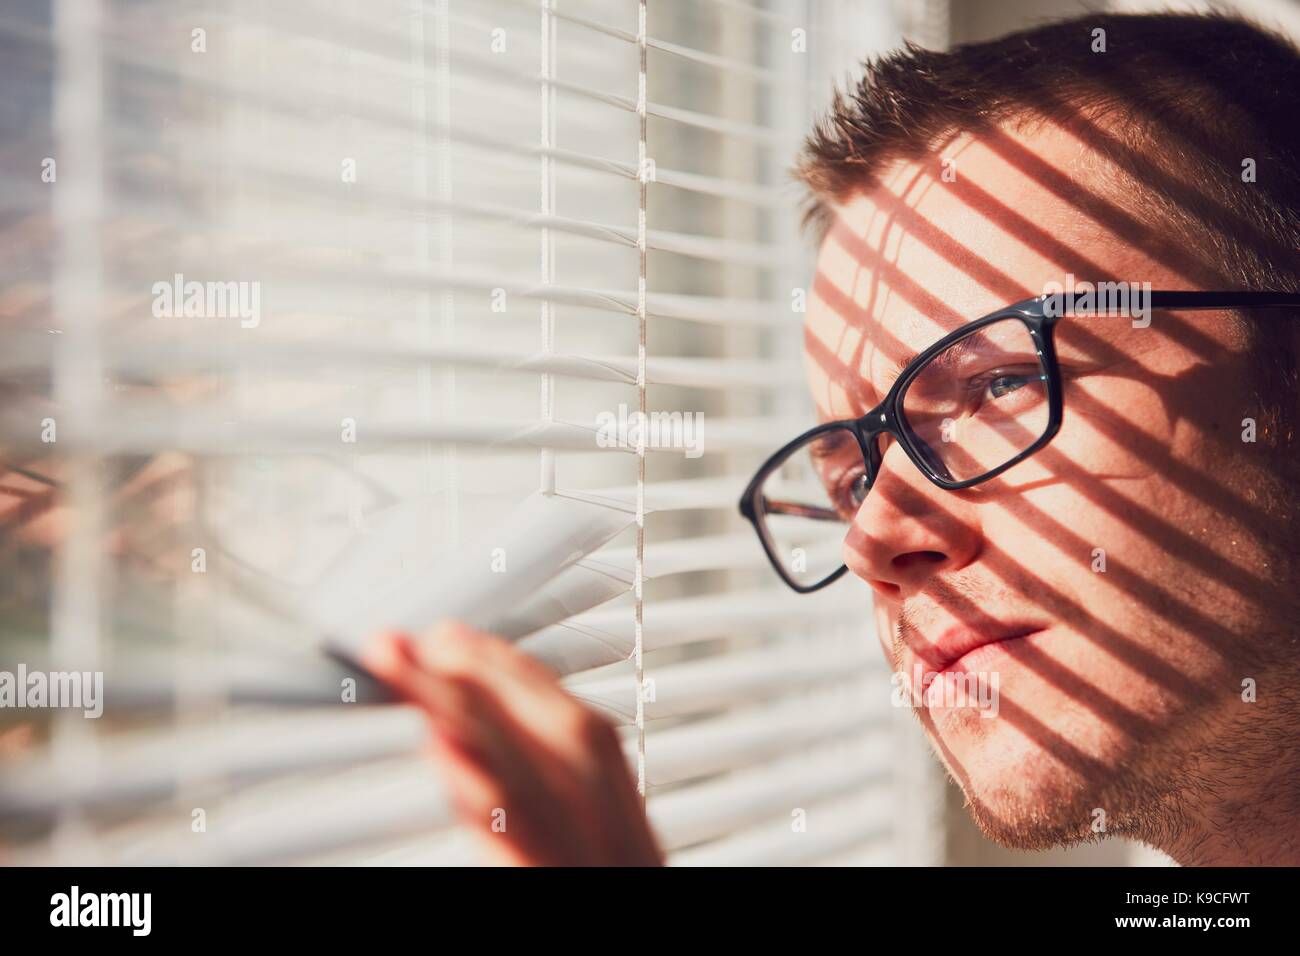 Neugierig Mann mit Brille schauen durch eine Jalousie. Themen Neugierde, Überwachung oder die Sehkraft. Stockfoto